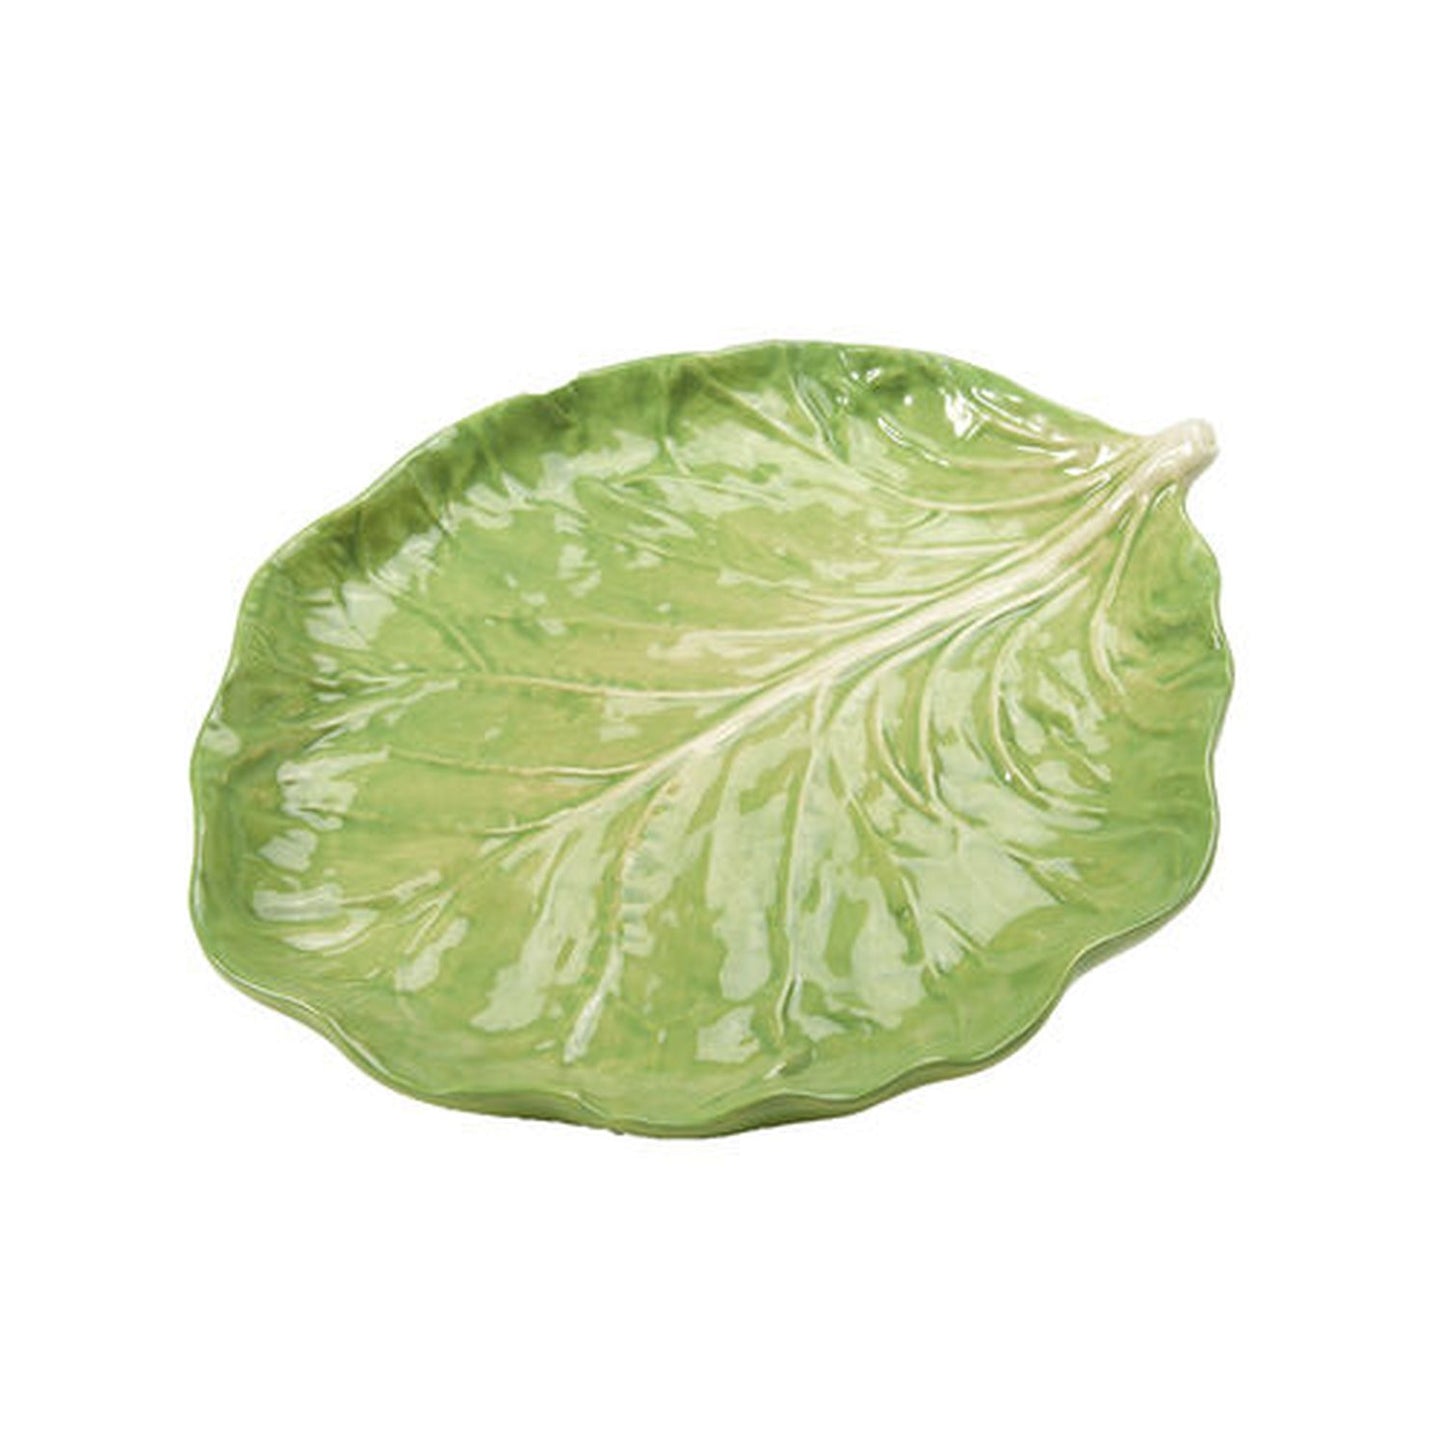 December Diamonds Green Garden 8.5" Cabbage Leaf Plate Figurine, Multicolor